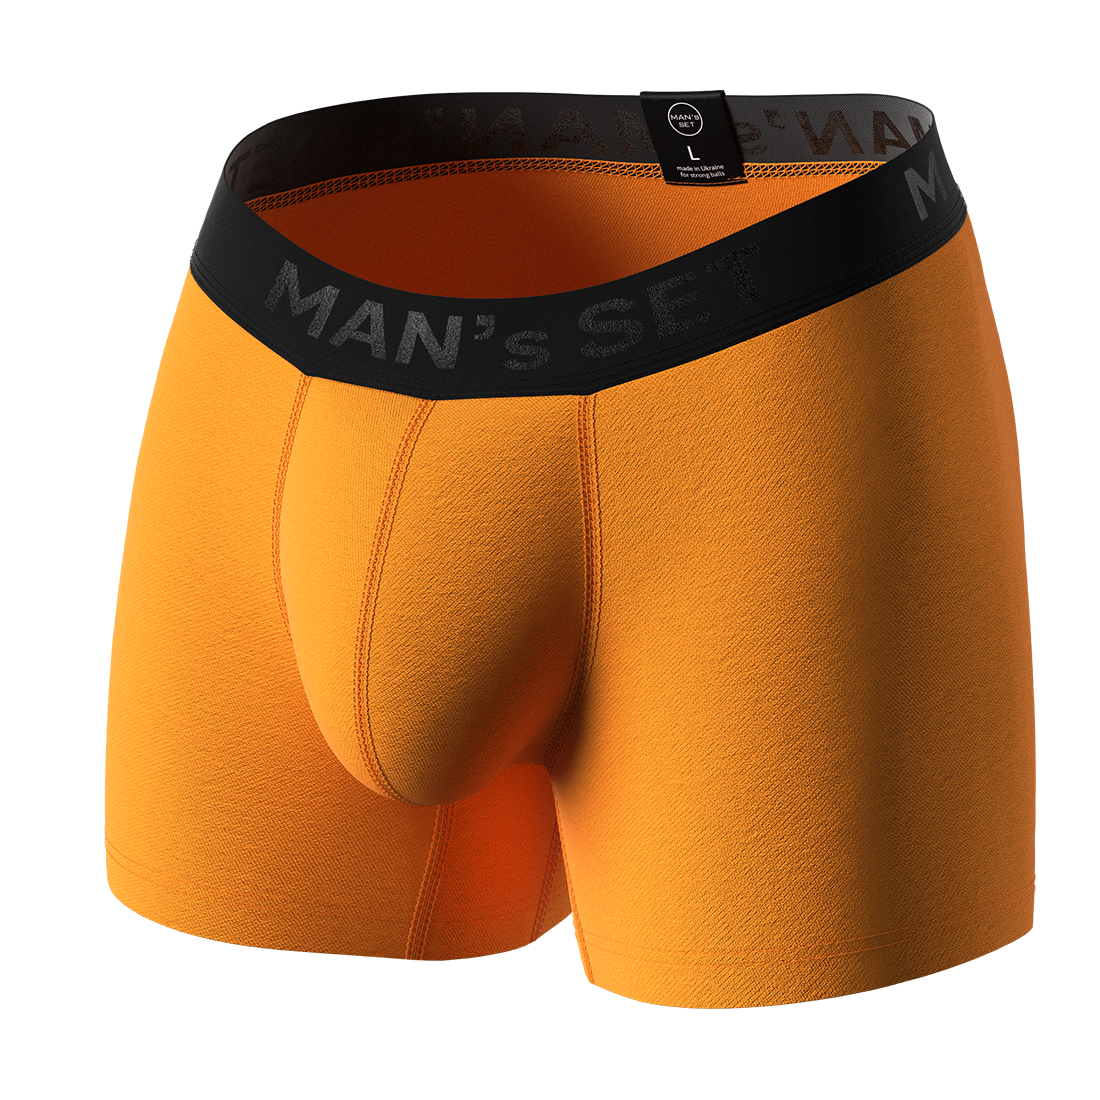 Мужские анатомические боксеры, Intimate Black Series, оранжевый MansSet